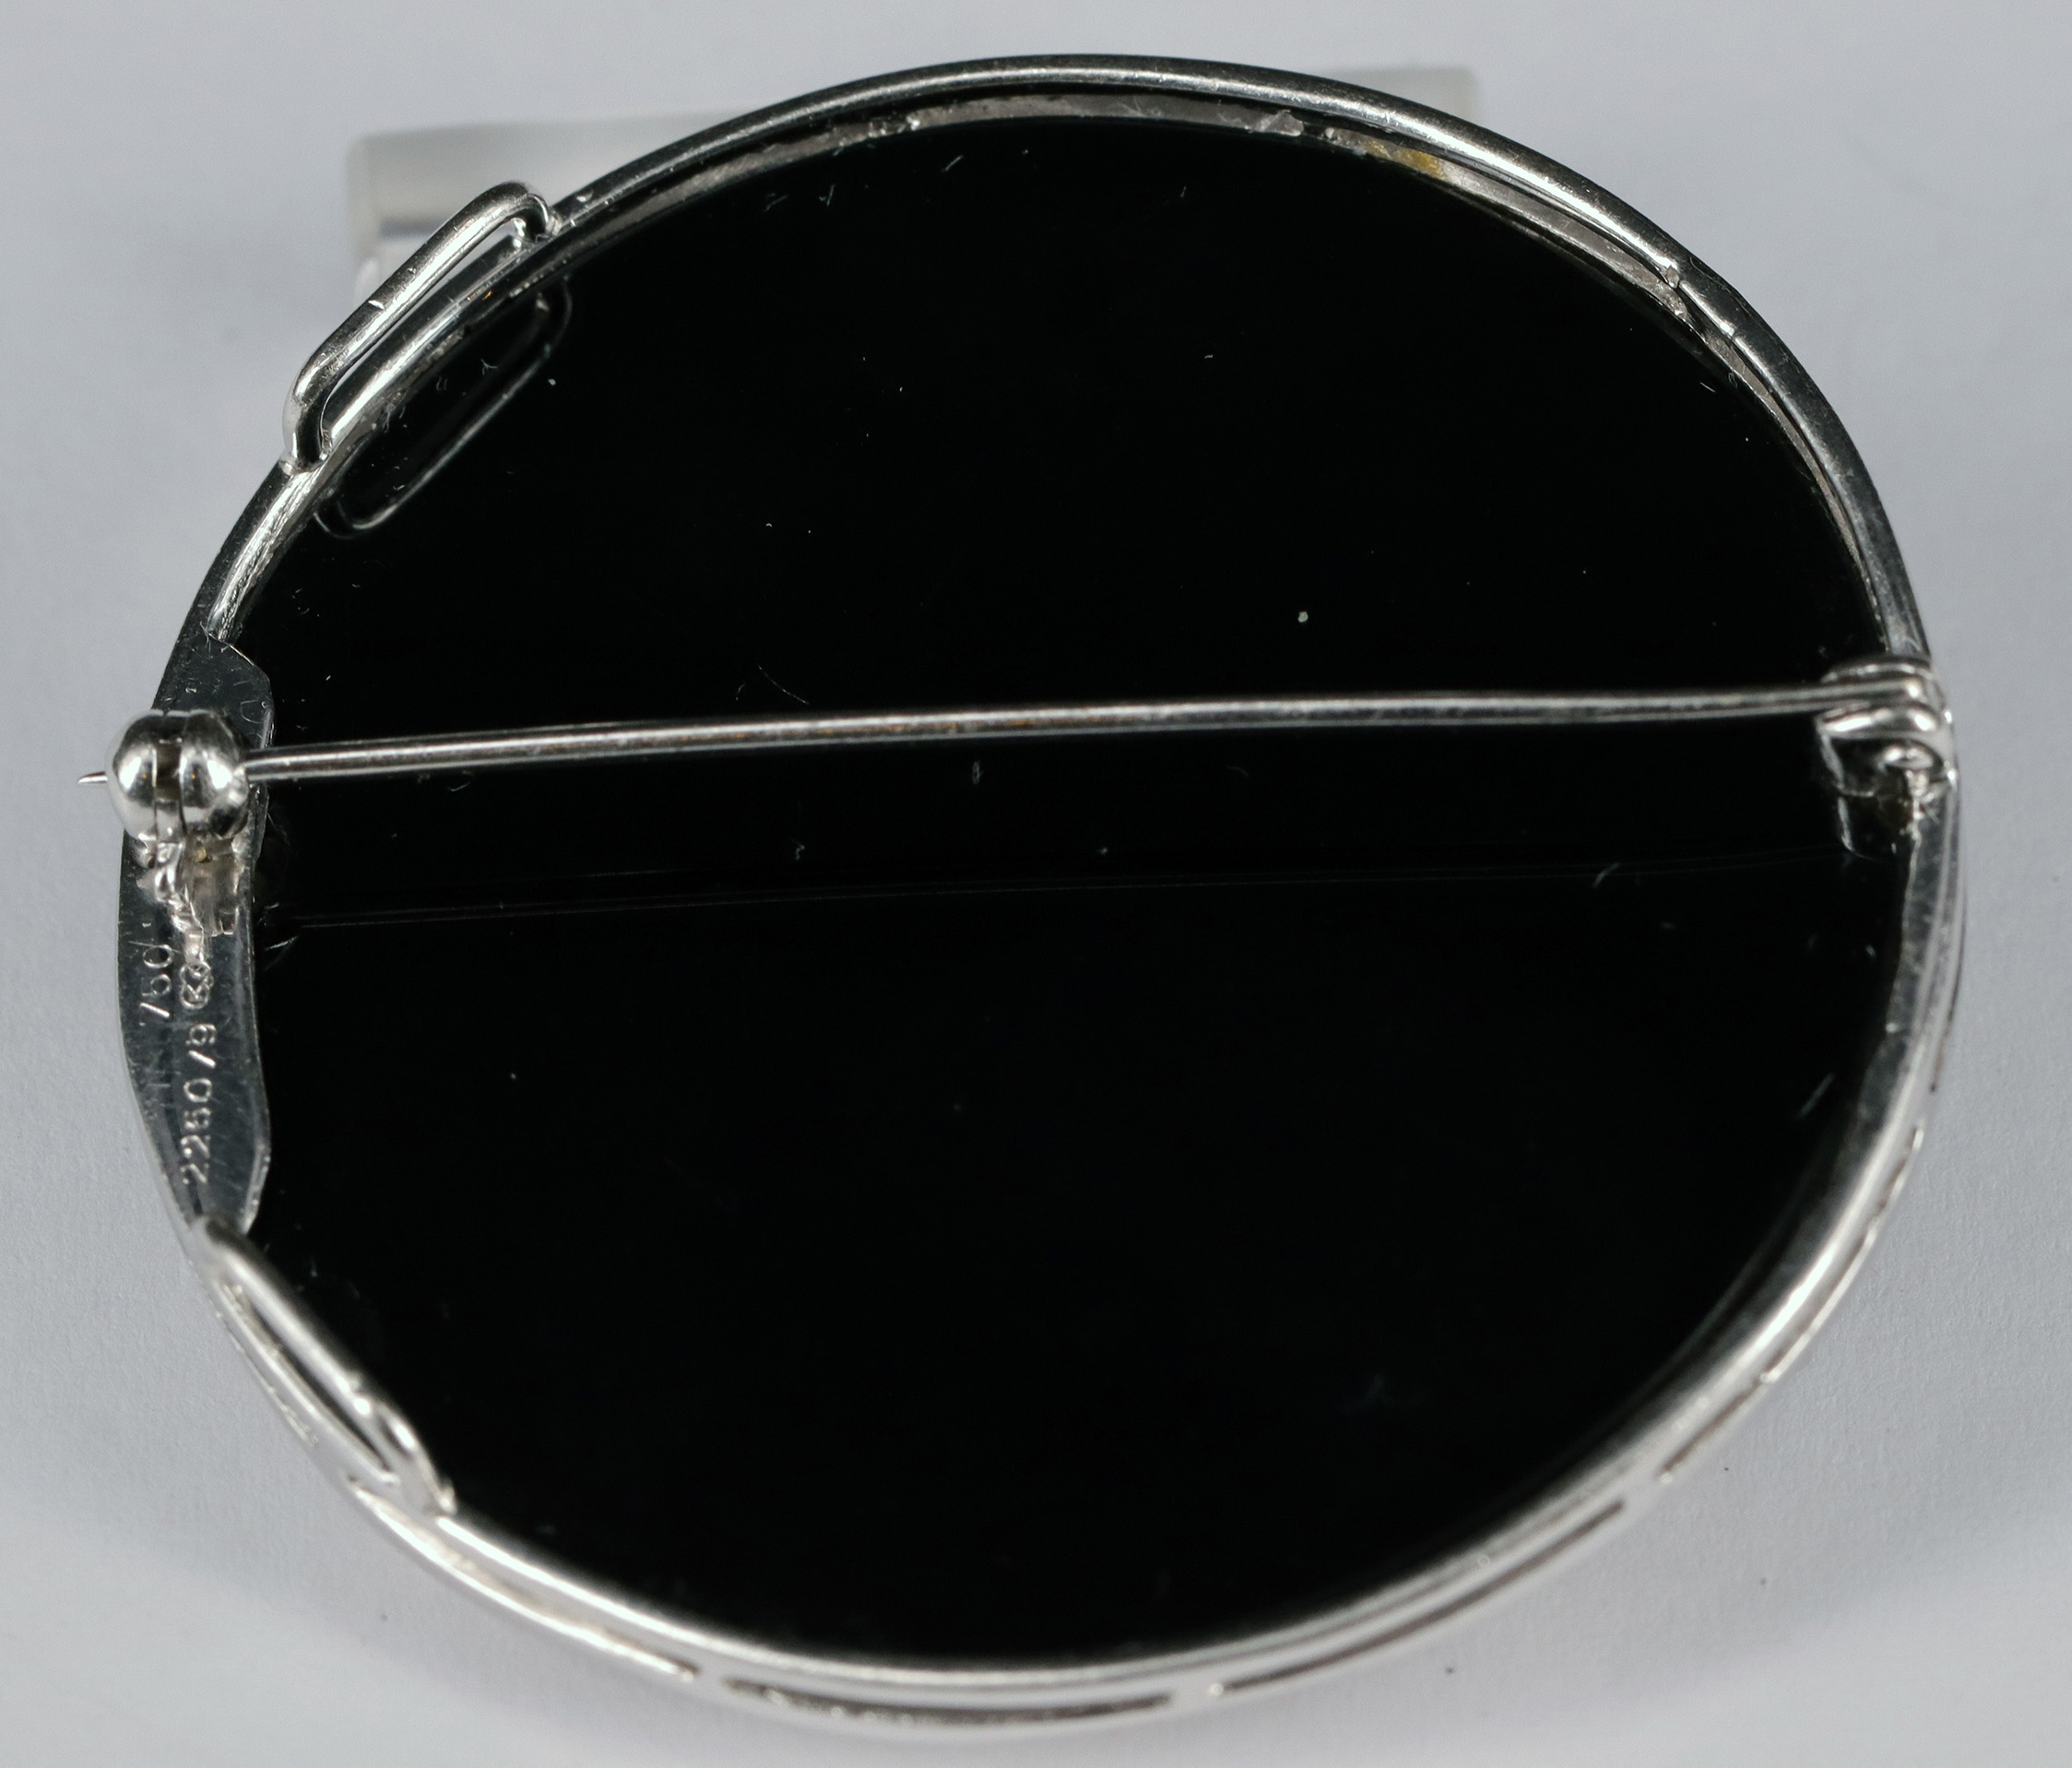 Onyxbrosche / Onyx brooch, 750er WG, kreisrund, mit ca 50 Diamanten besetzt, D. 4,6 cm, 25,48 g - Image 2 of 2